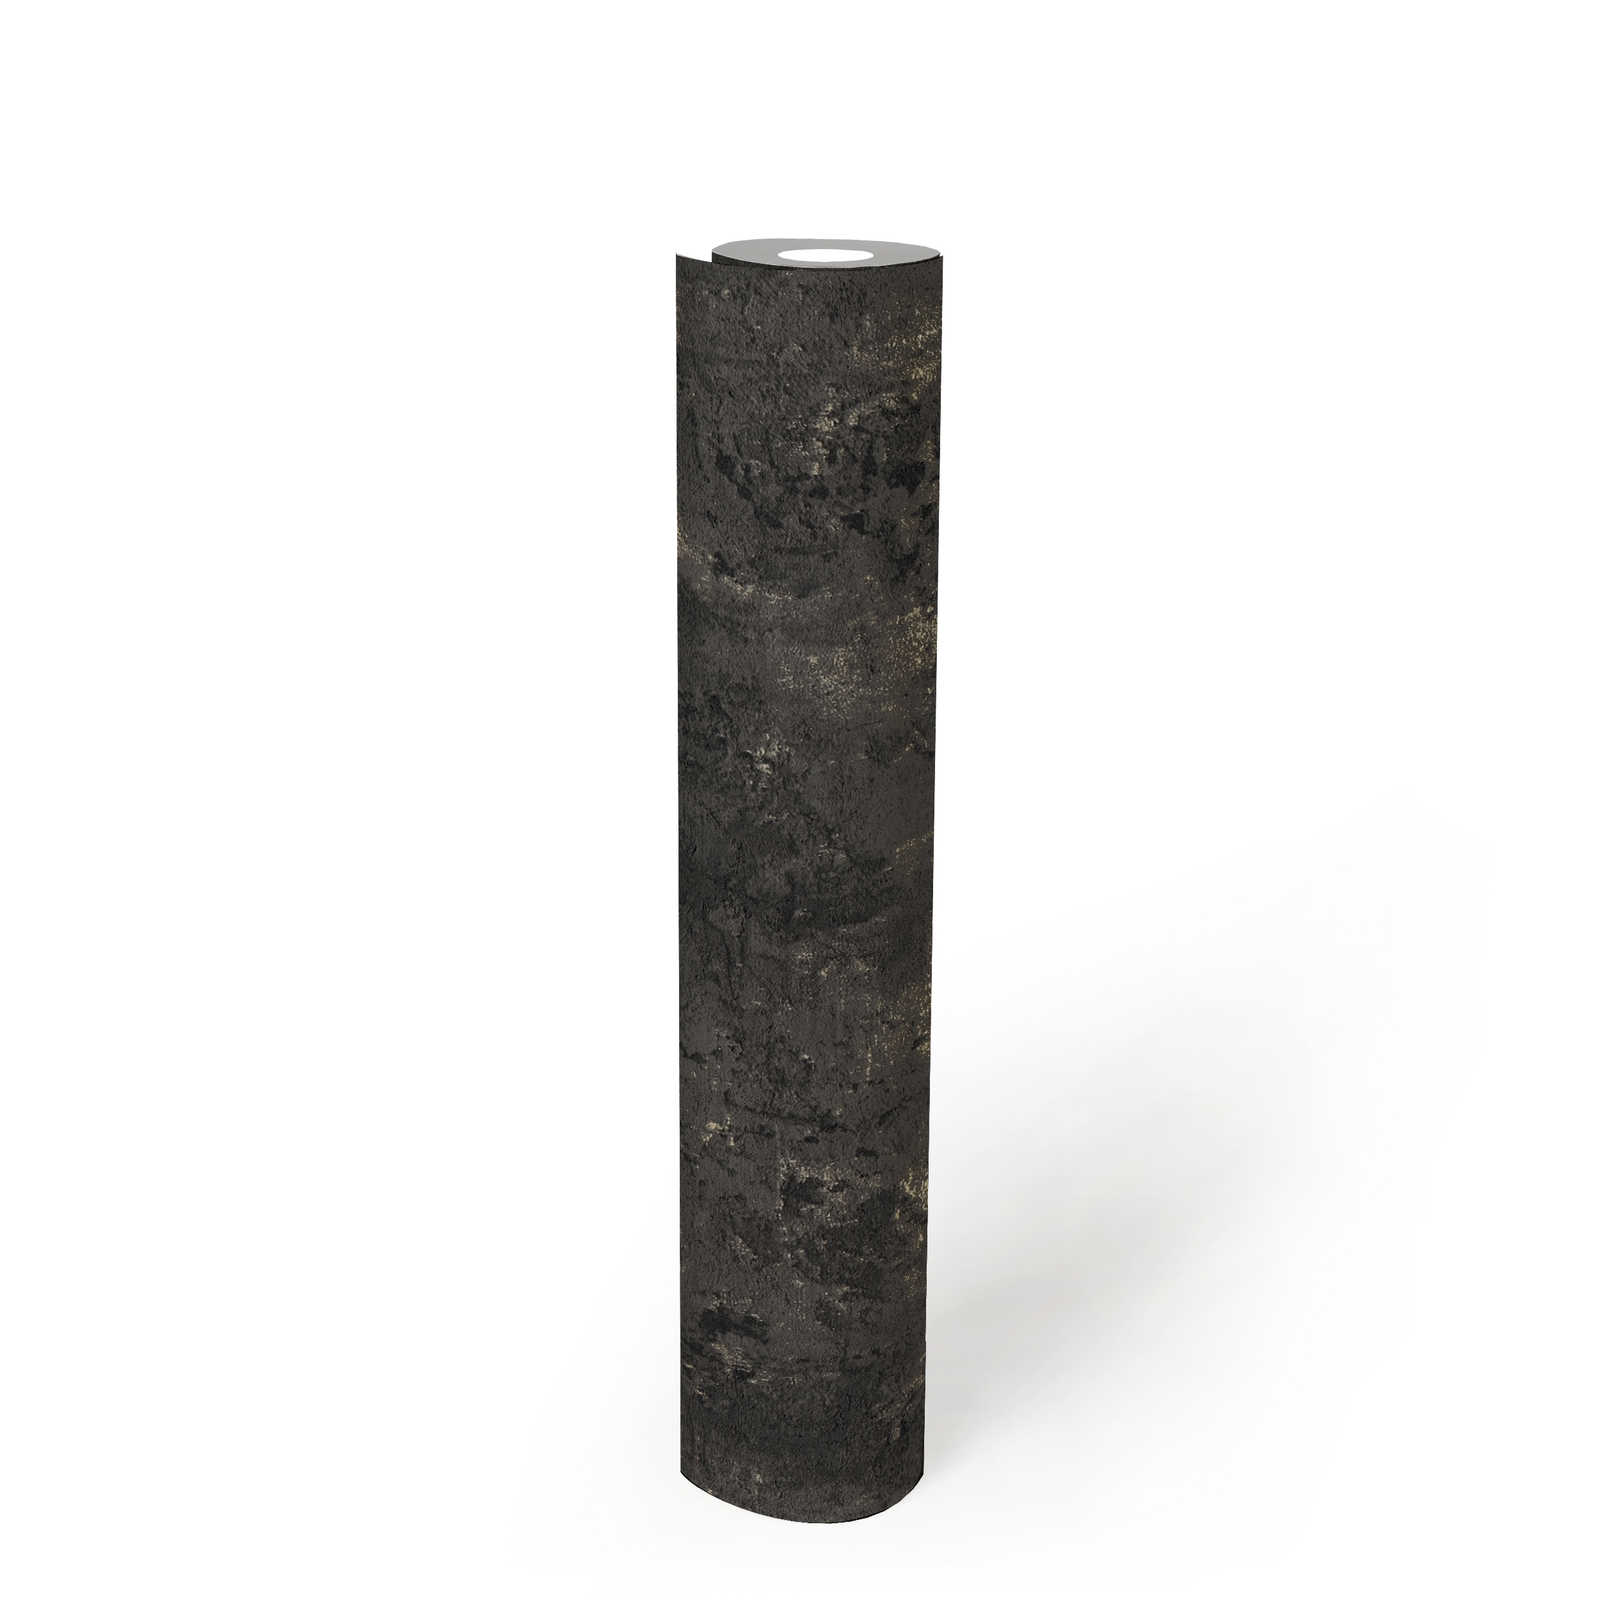             Papel pintado con textura negra y aspecto de hormigón rústico
        